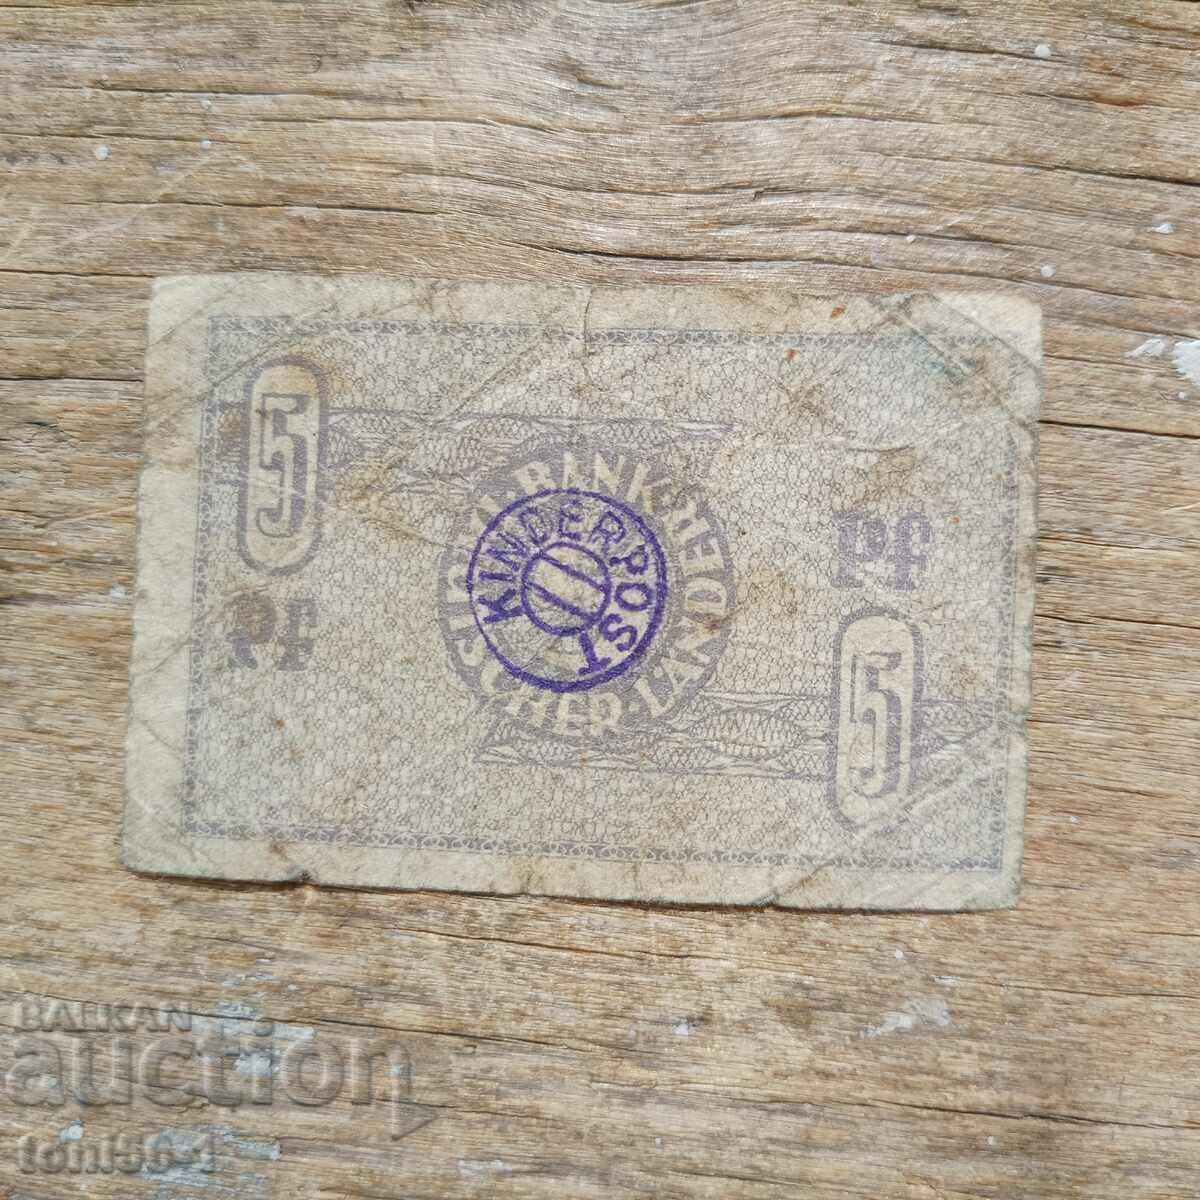 Germany - Deutsche Laender 5 Pfennig 1948